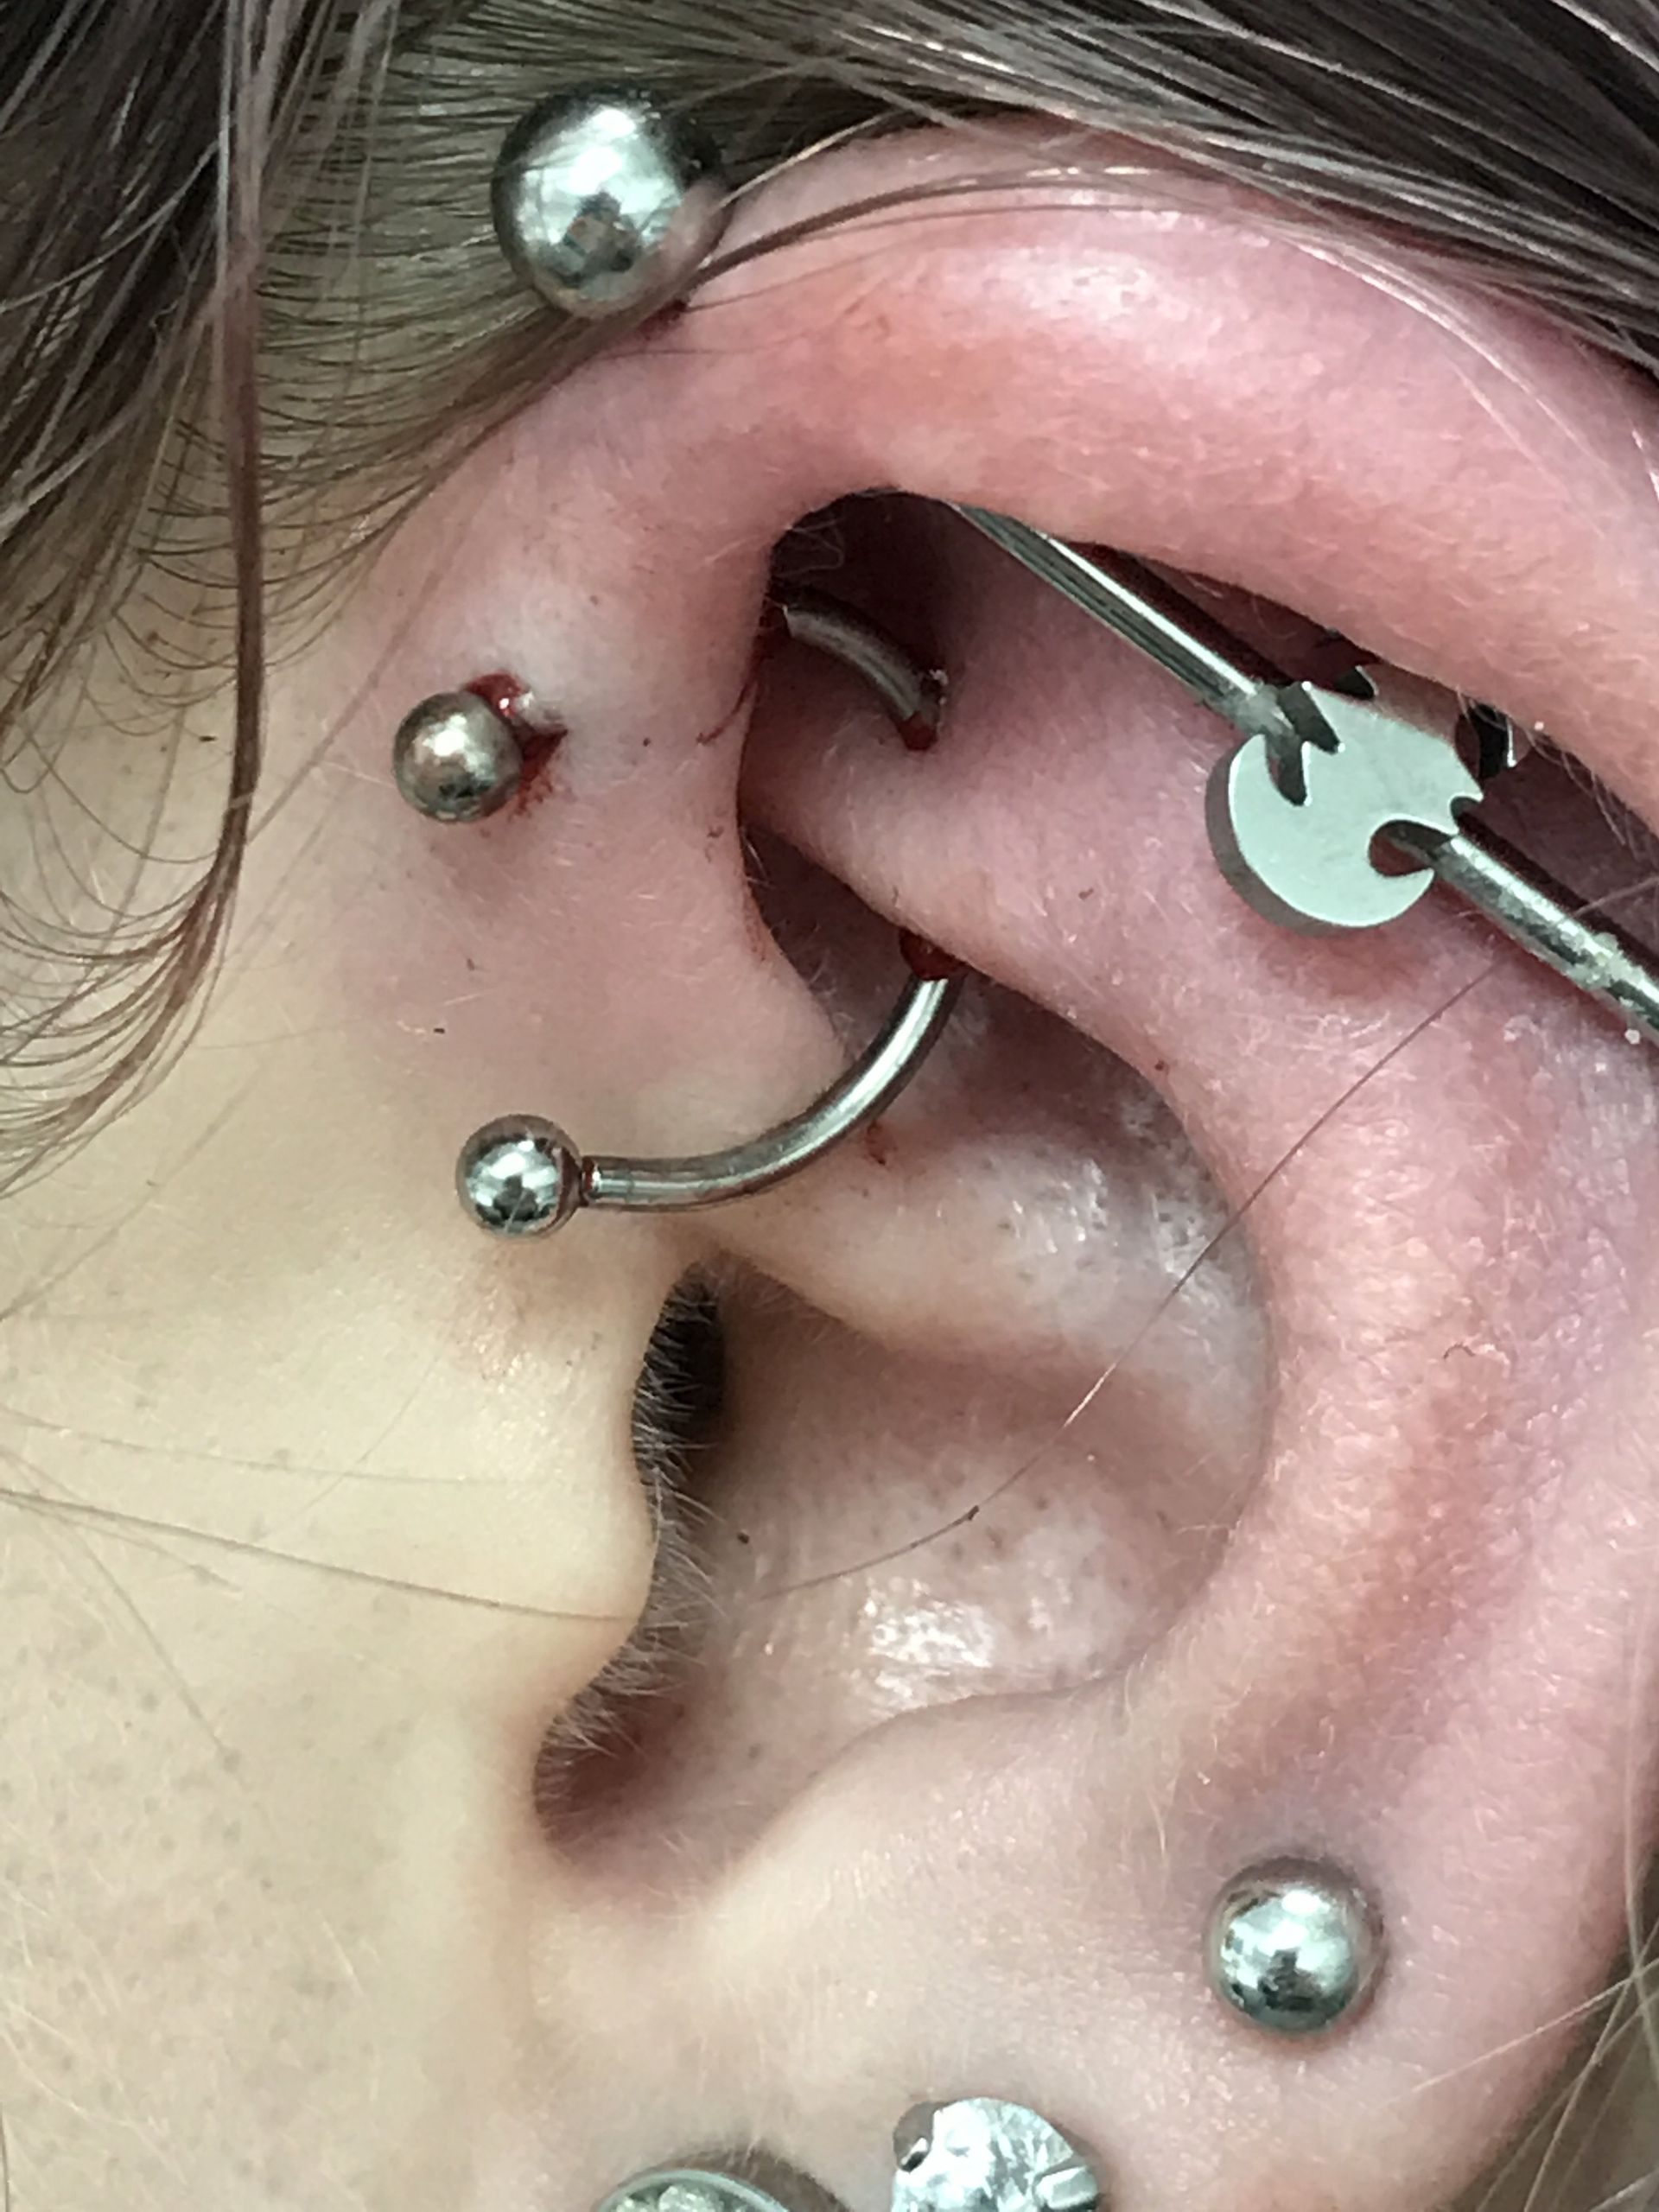 multiple ear piercing